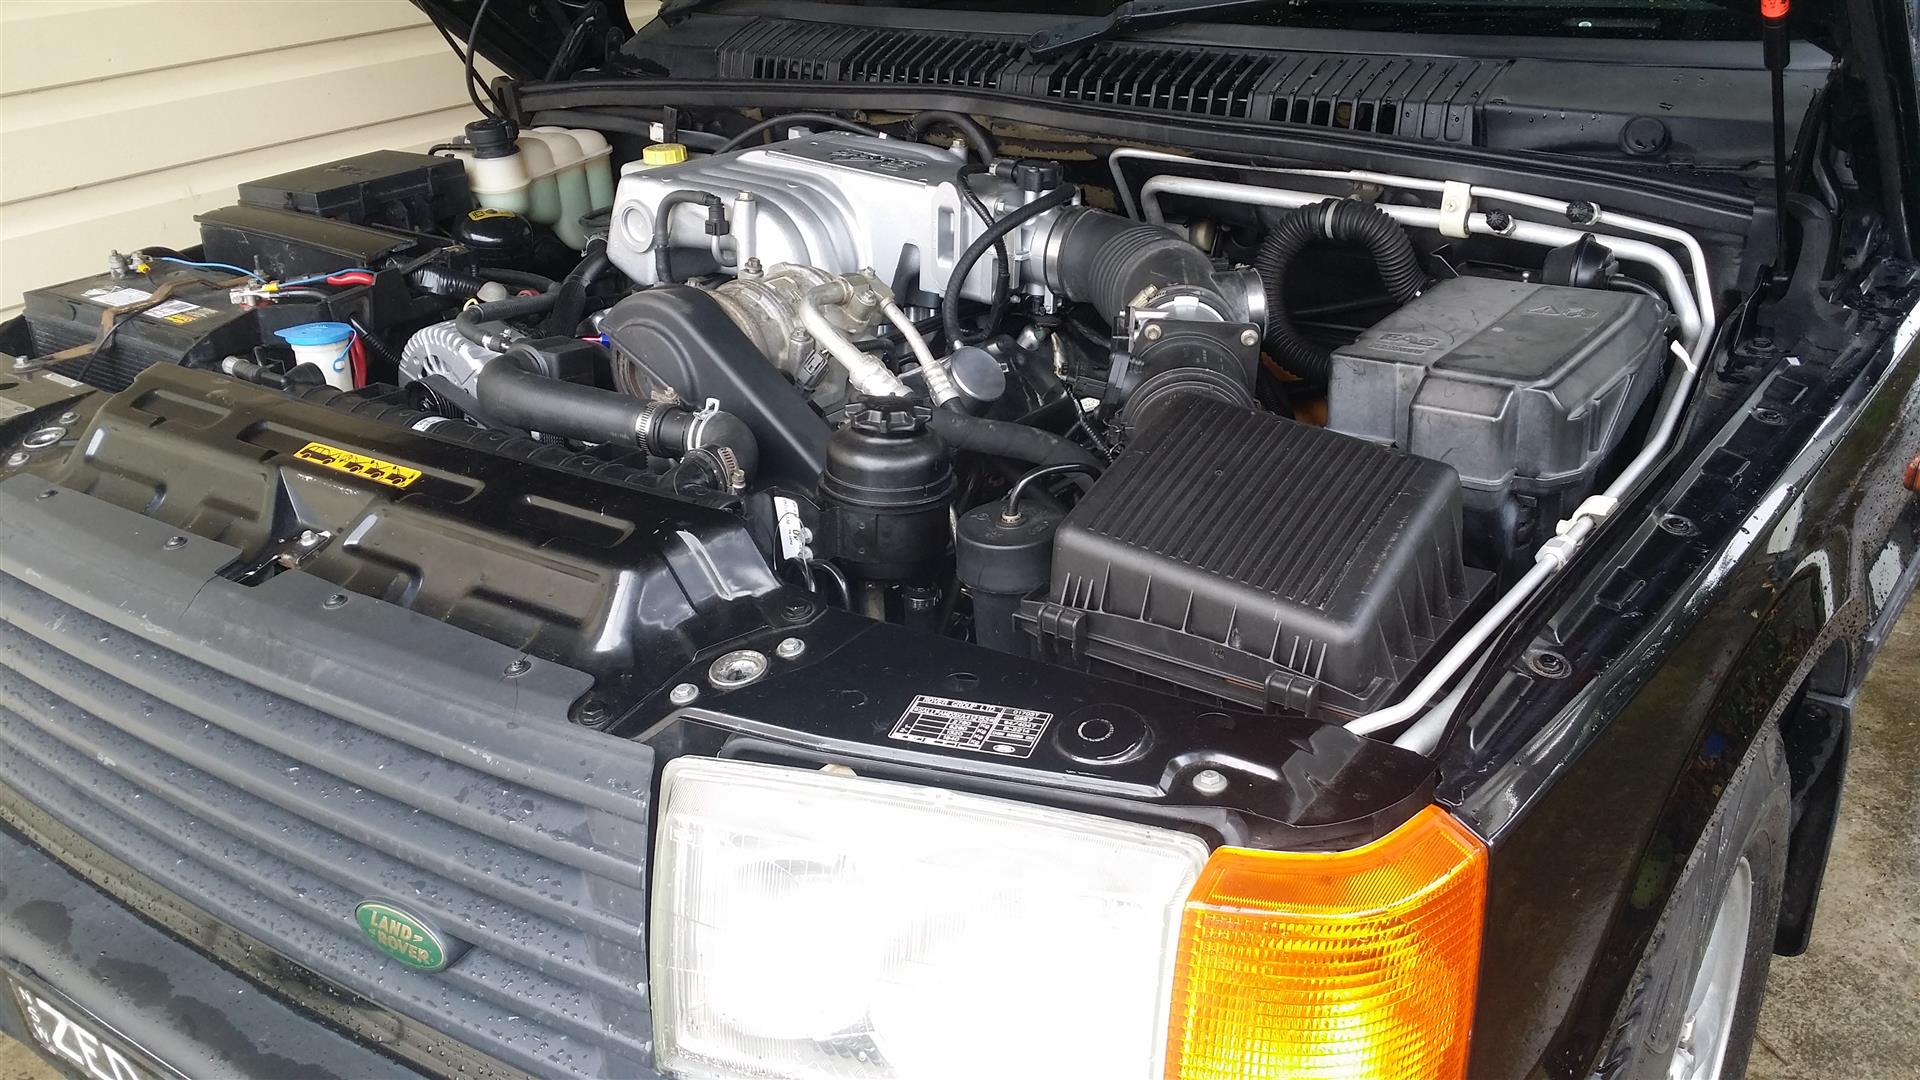 Land Rover 5.0L EFI Windsor V8 converison